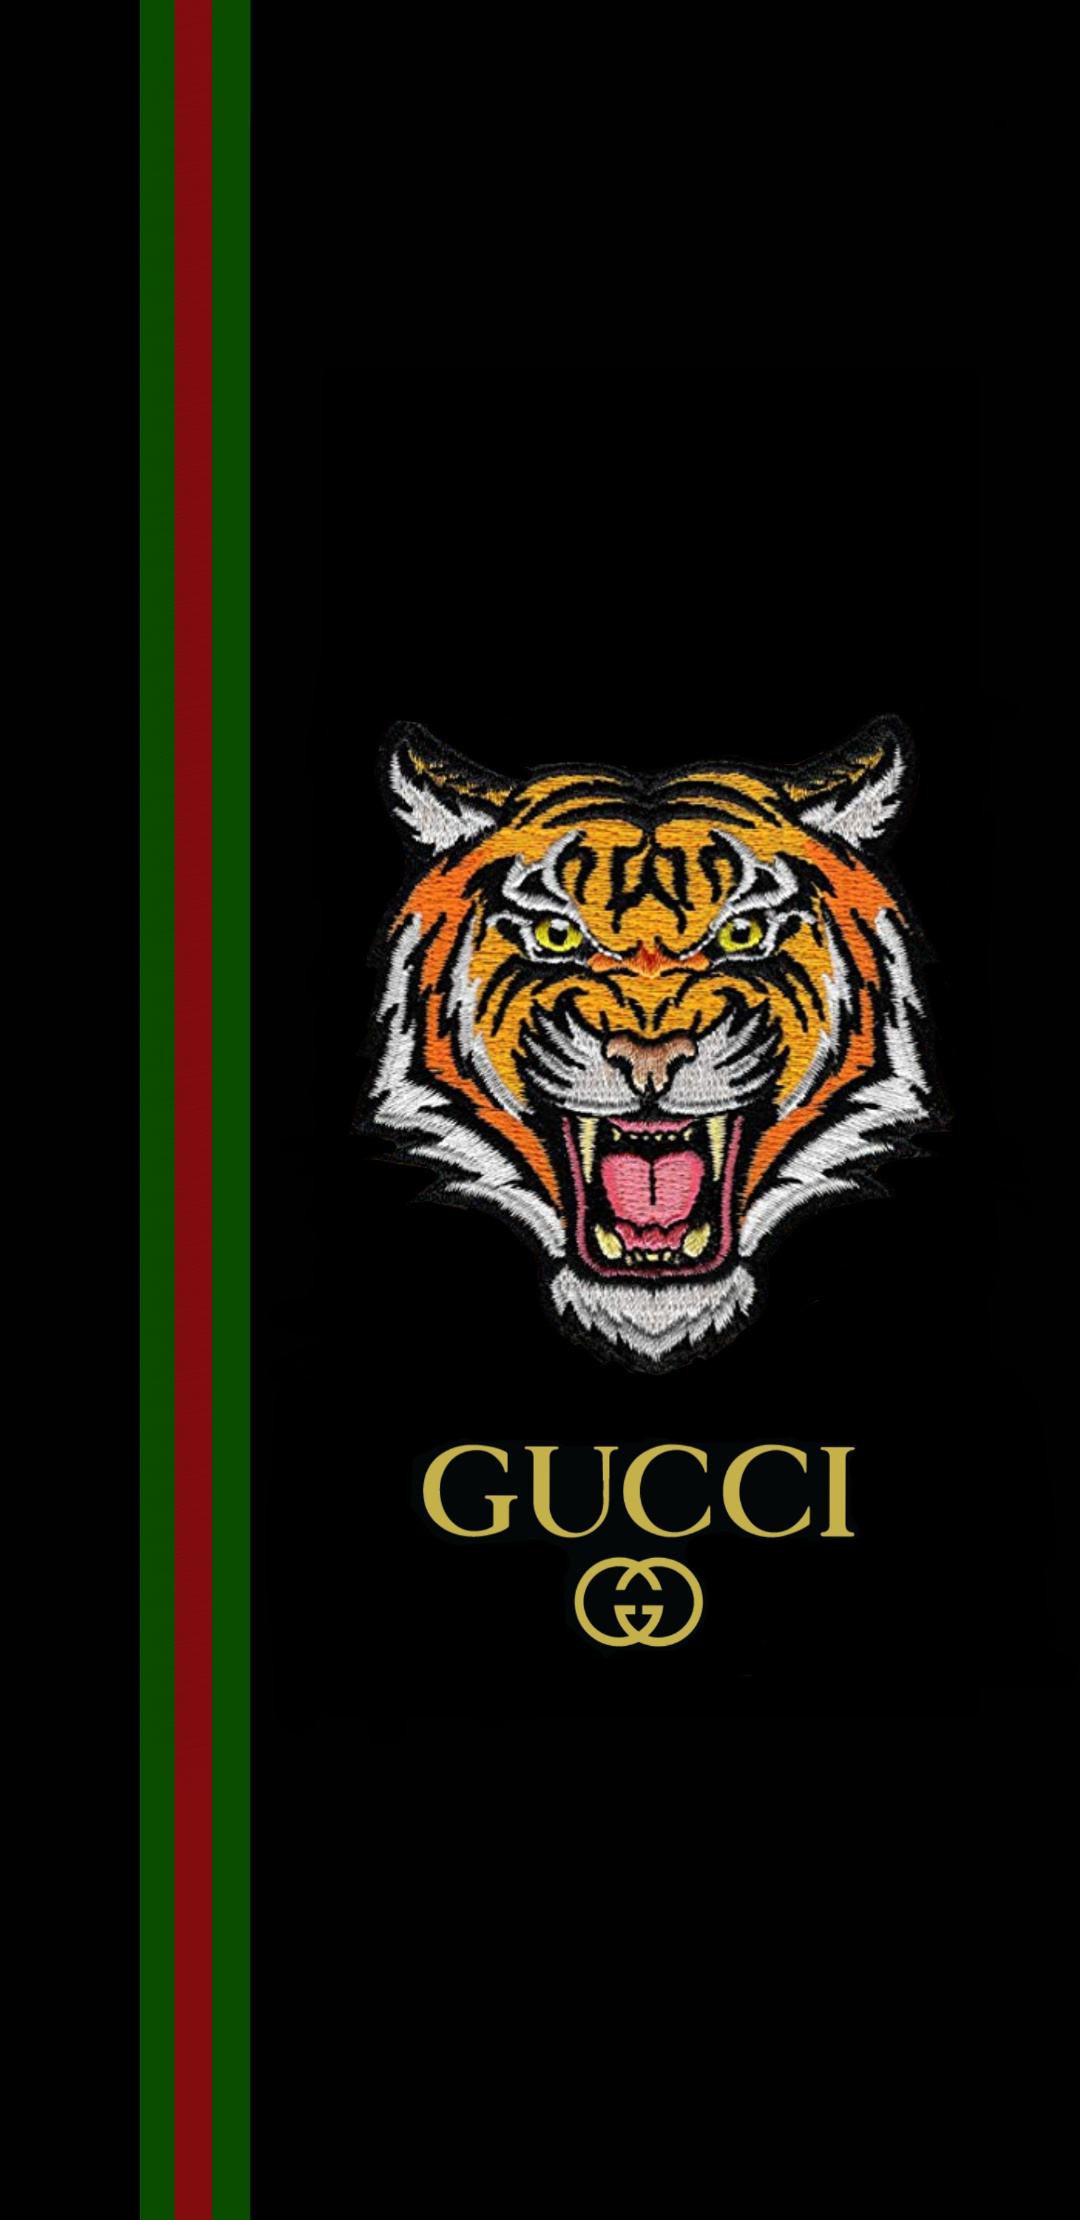 Hình ảnh Gucci, hình nền Gucci: Chọn hình nền Gucci và thể hiện gu thời trang của riêng mình. Hình ảnh Gucci sẽ mang đến cho bạn sự phong cách và cá tính riêng biệt. Trang trí cho màn hình của bạn với những hình ảnh Gucci đẹp mắt.